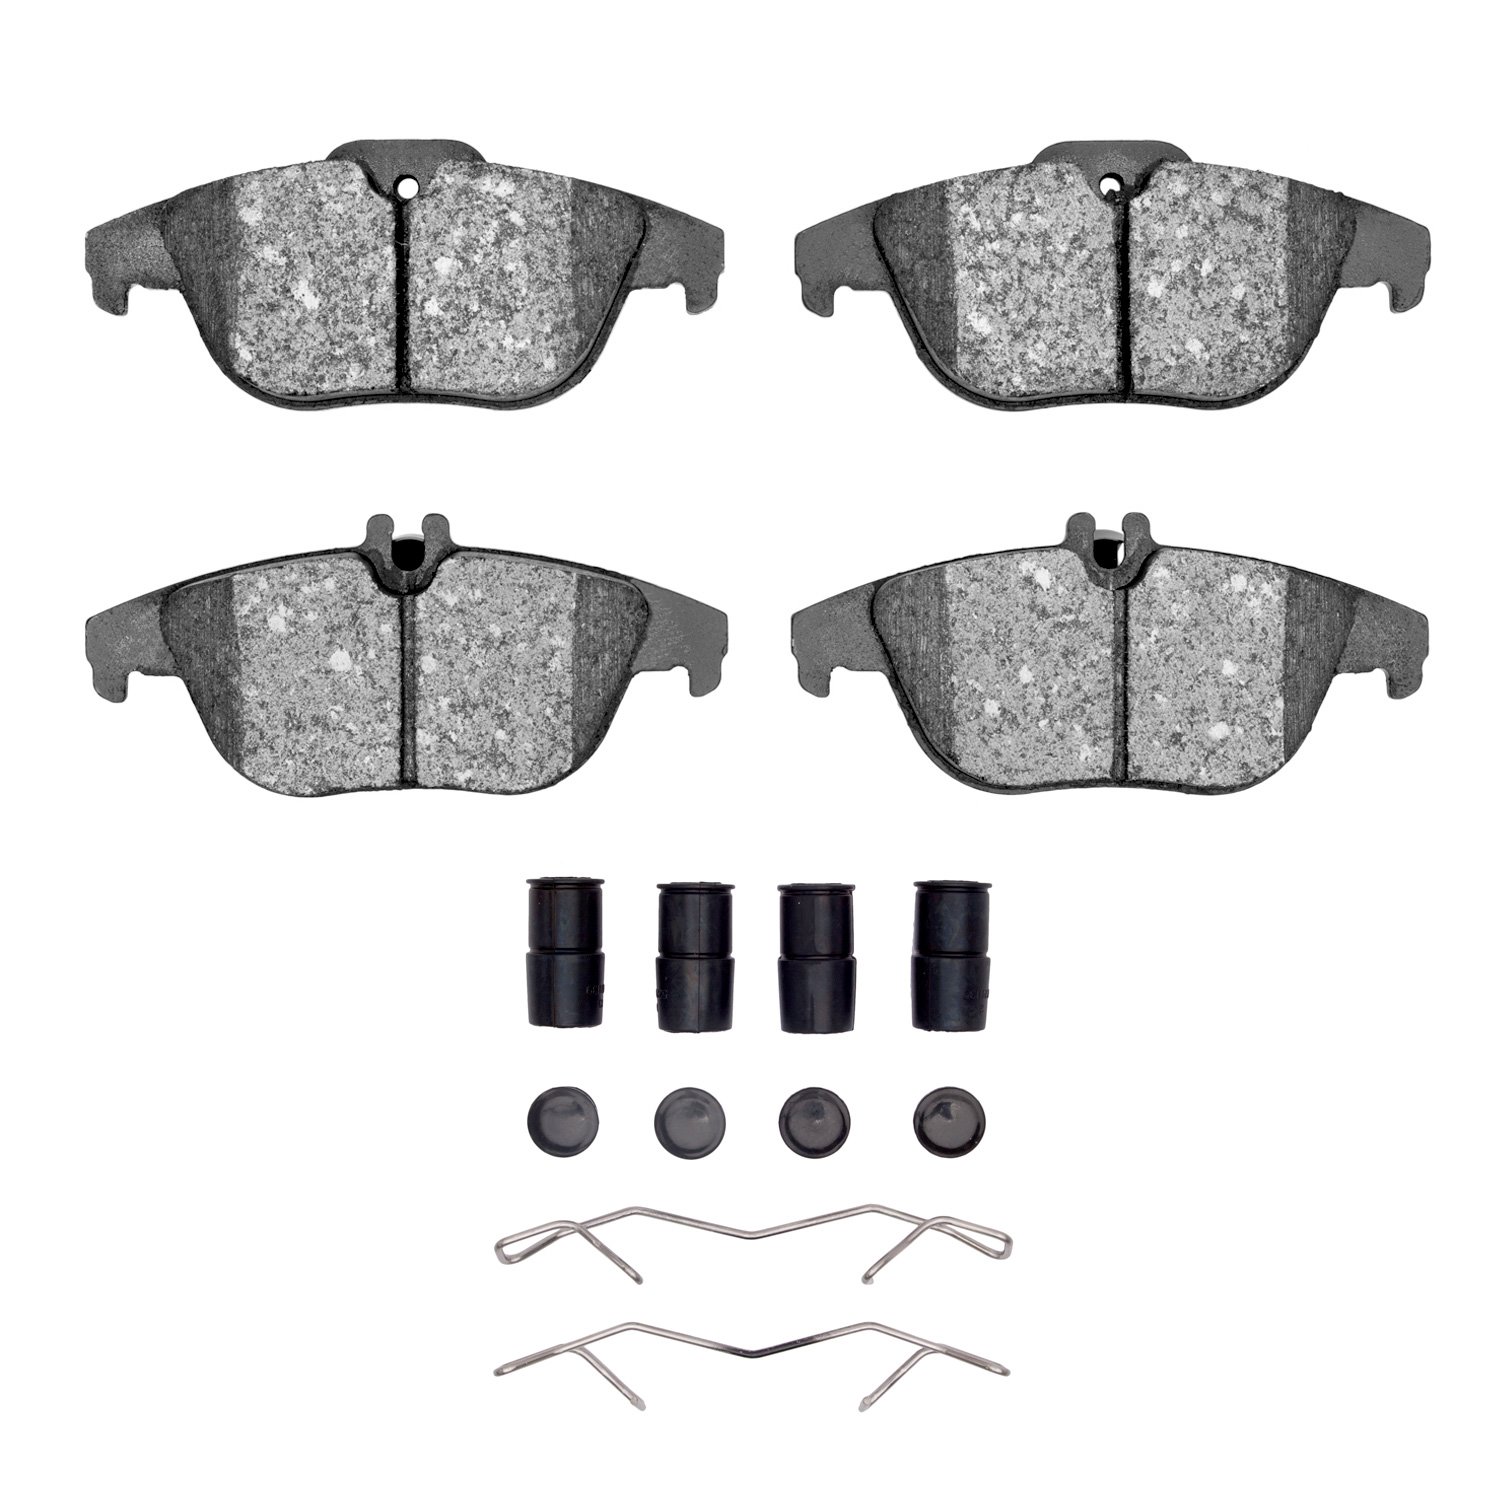 Semi-Metallic Brake Pads & Hardware Kit, 2008-2017 Mercedes-Benz, Position: Rear